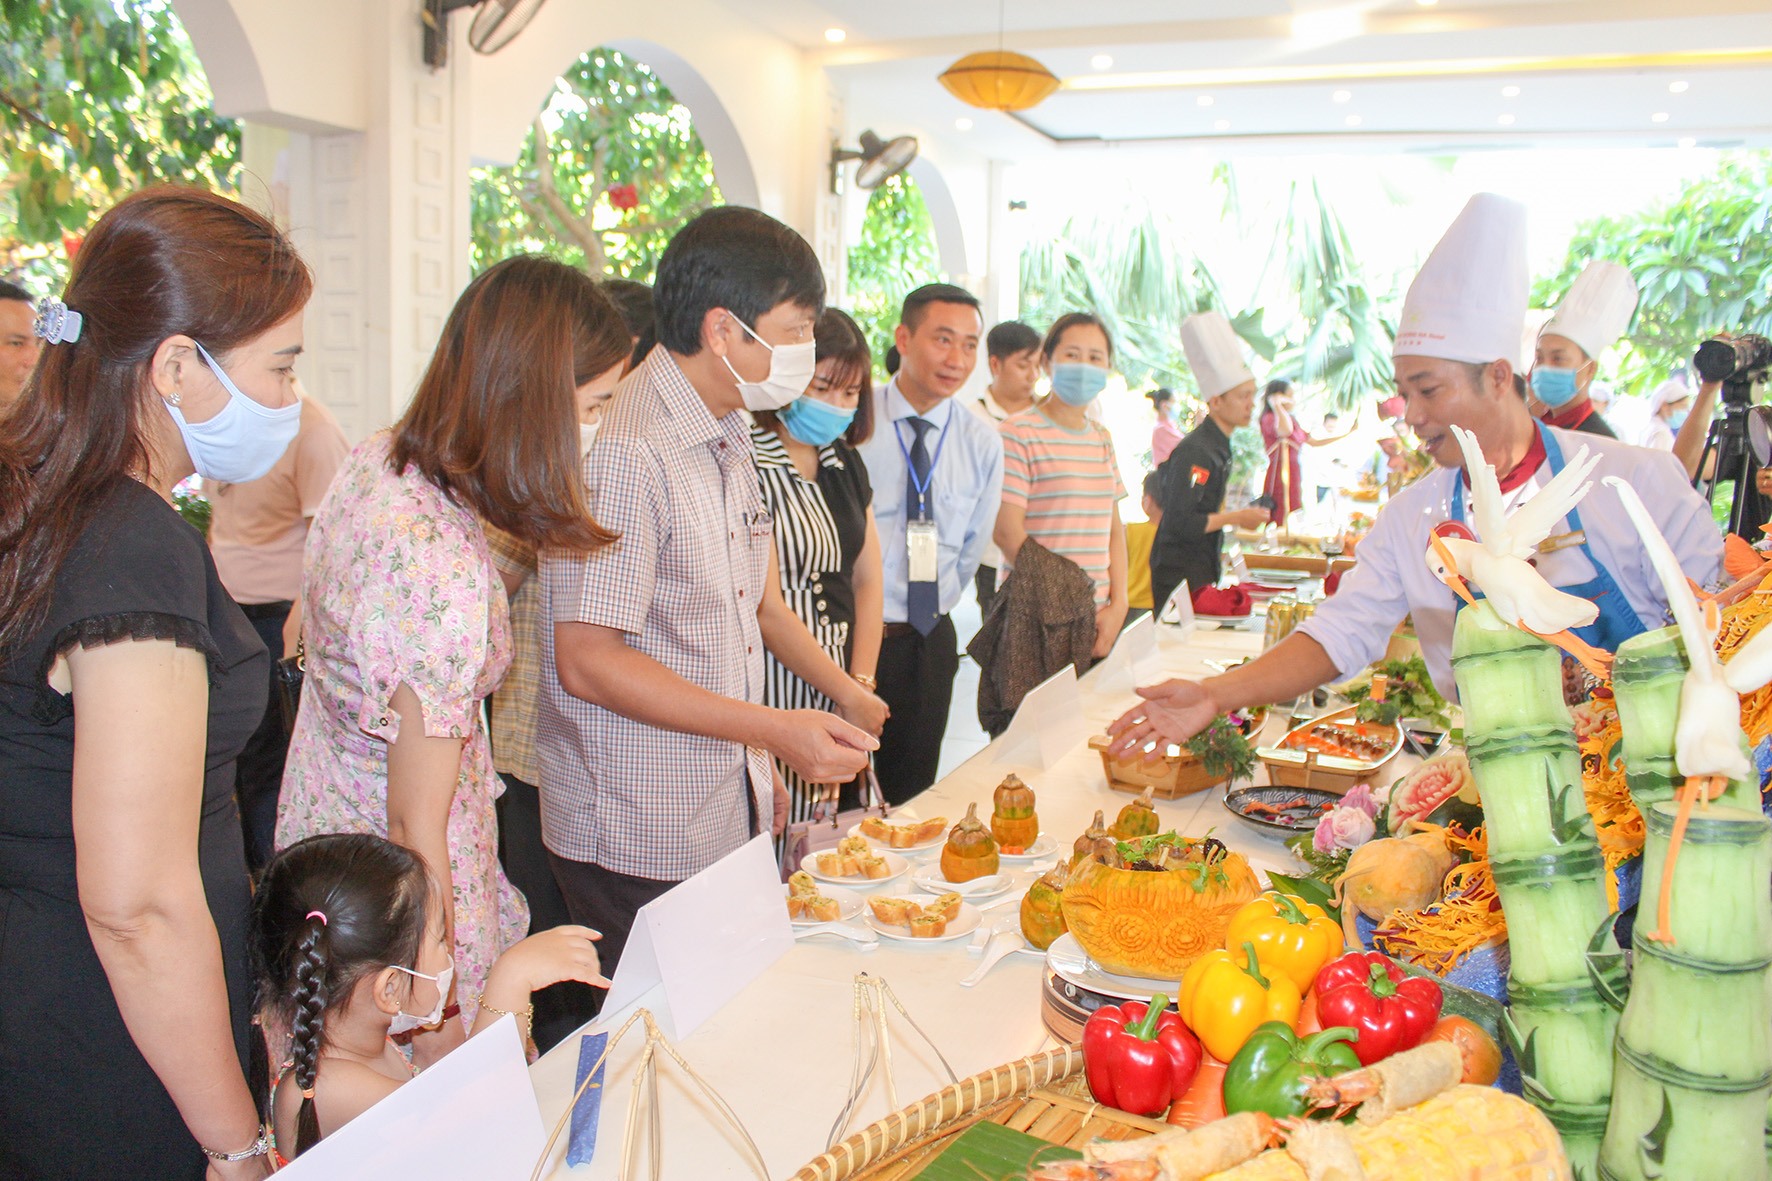 Phó Chủ tịch UBND tỉnh Hoàng Nam nghe các đội thi giới thiệu về các món ăn -Ảnh: H.T